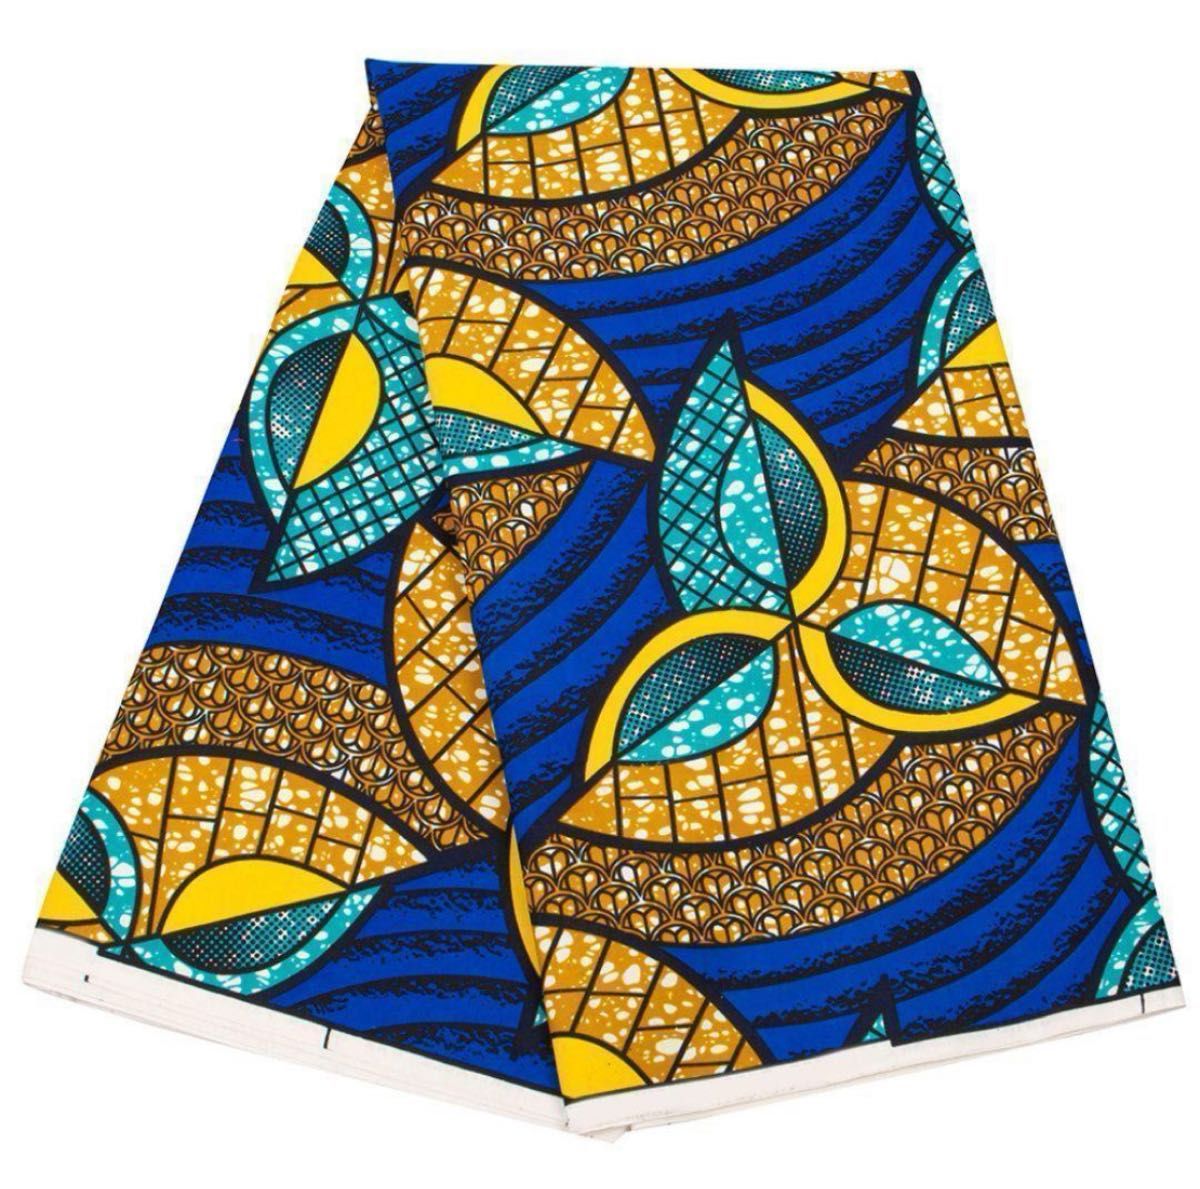 アフリカ布 2ヤード アフリカンバティック ターバン 生地 エスニック おしゃれ バッグ ワンピース スカート パンツ 青 黄色